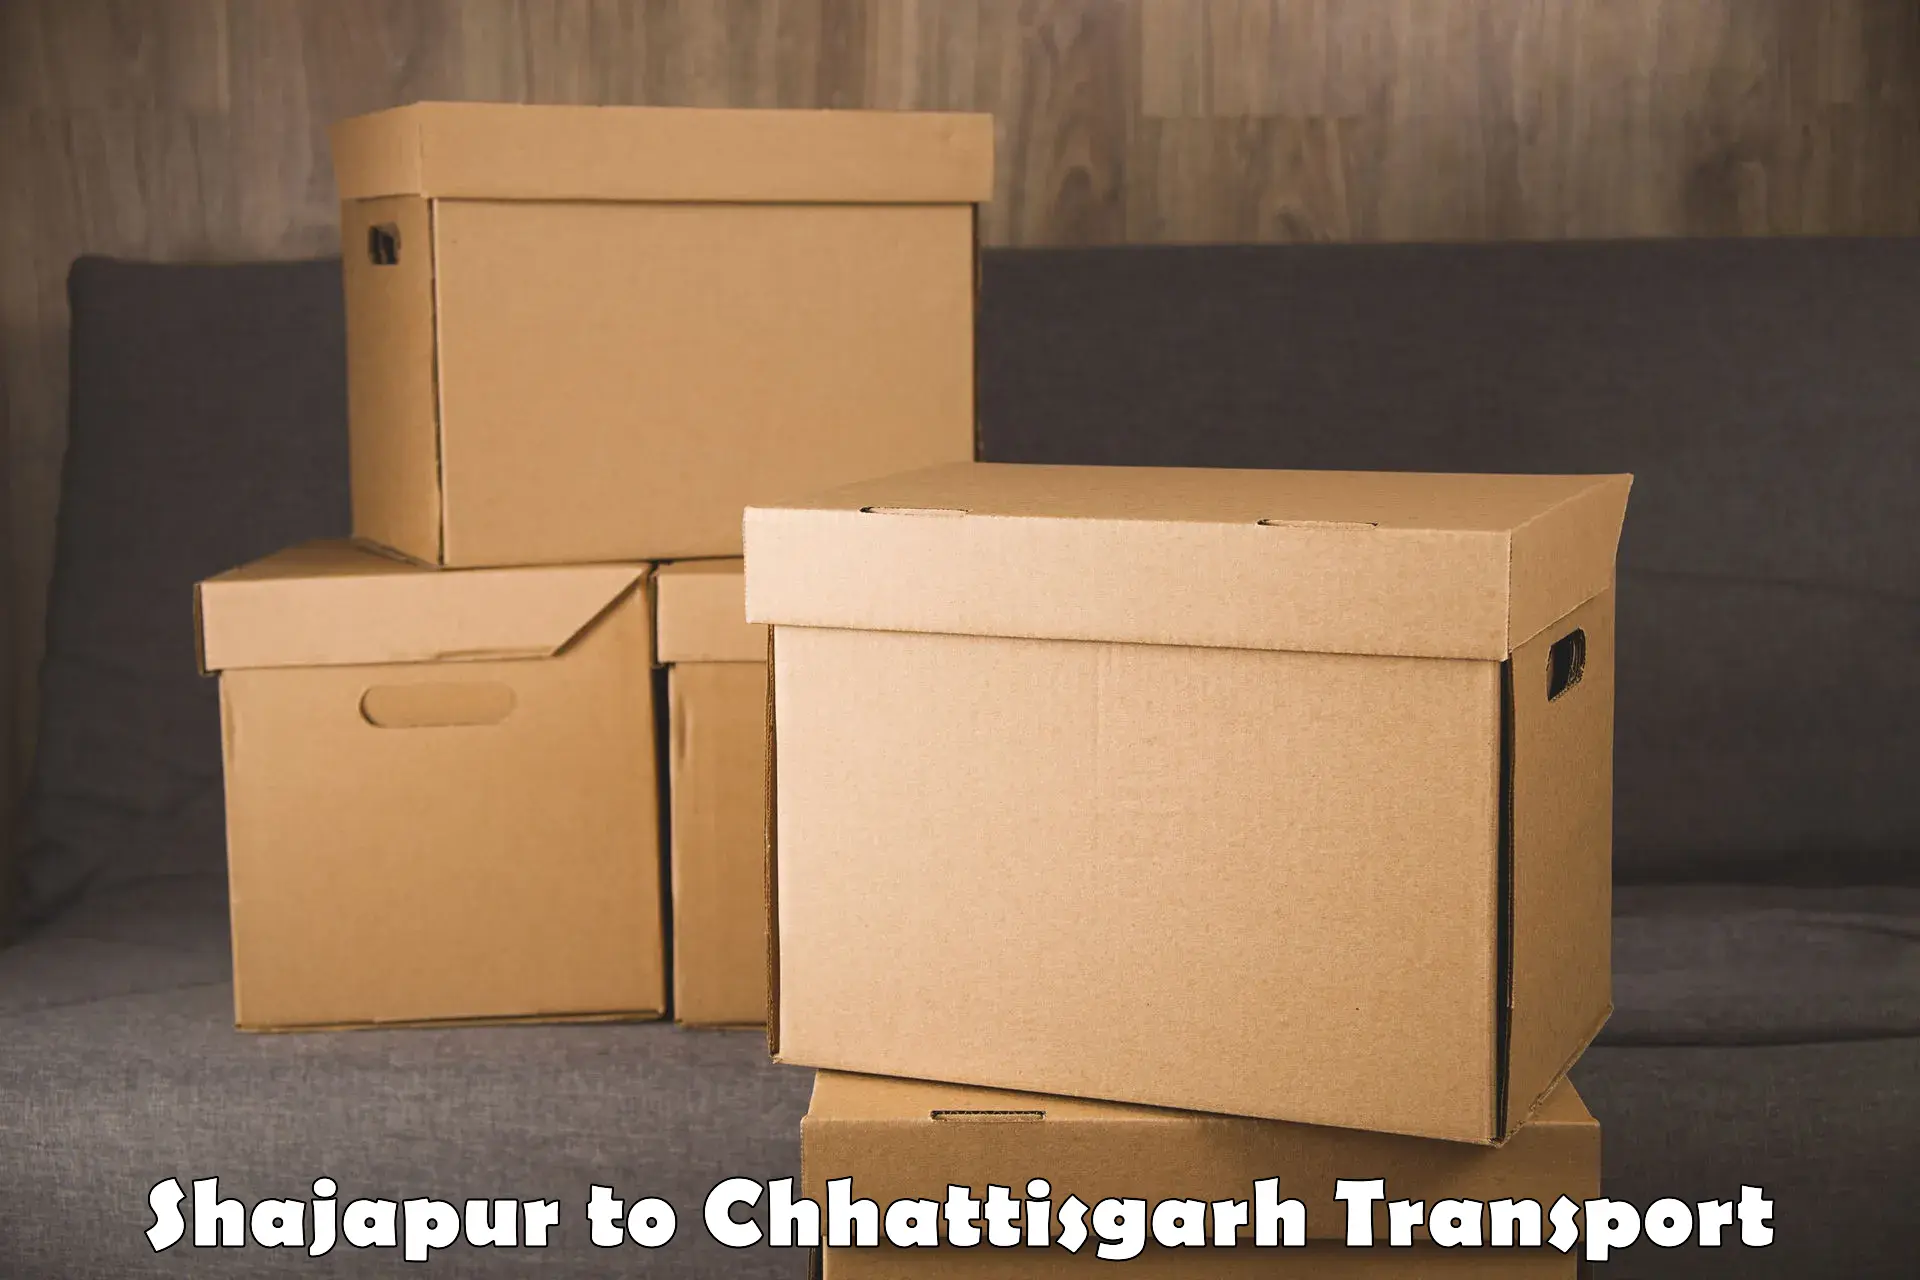 Interstate transport services Shajapur to Kondagaon